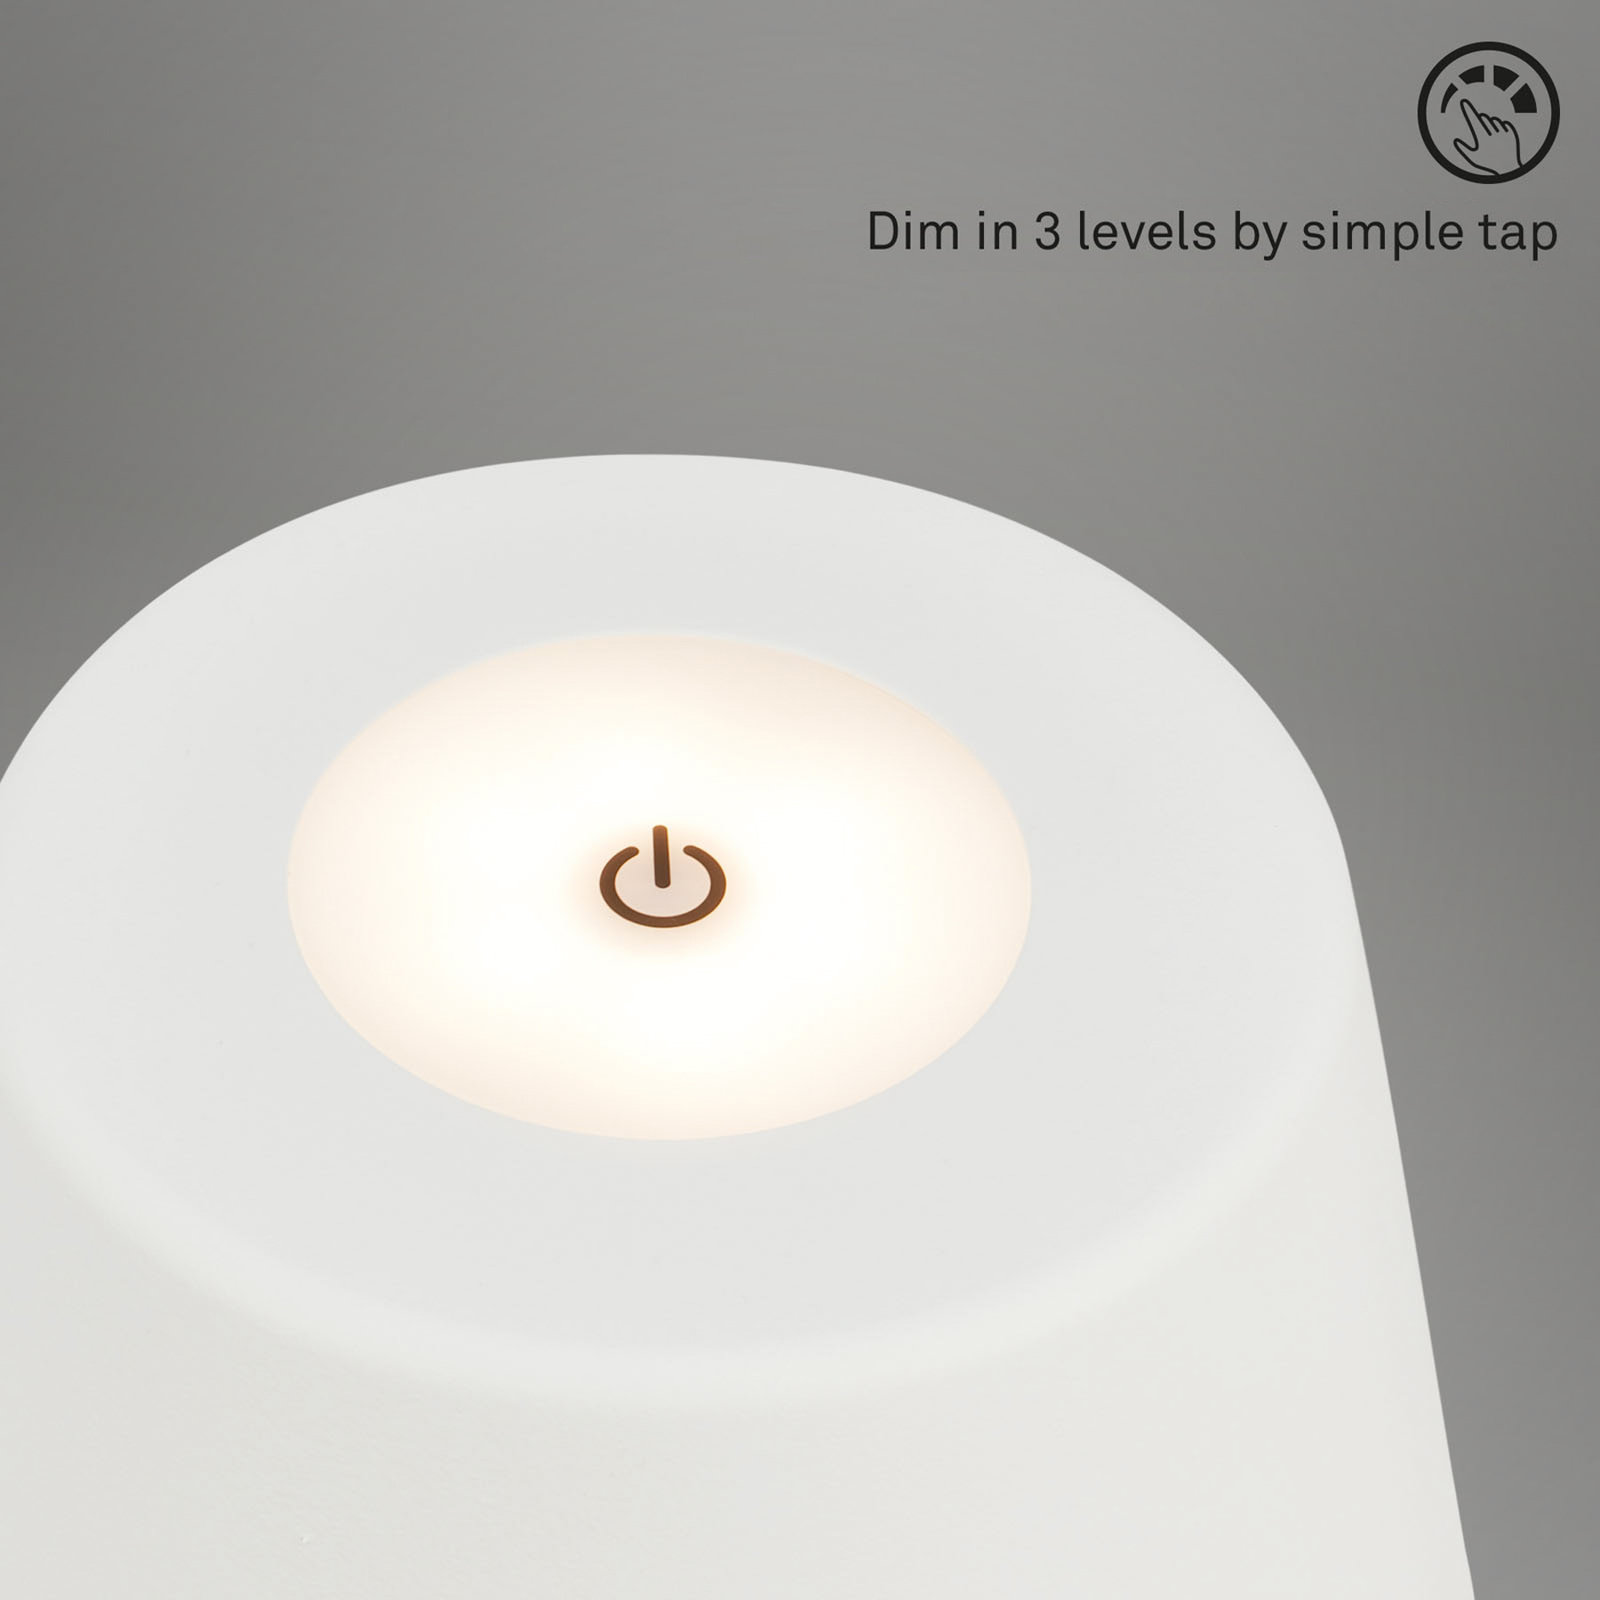 LED stolní lampa Kihi s dobíjecí baterií, bílá